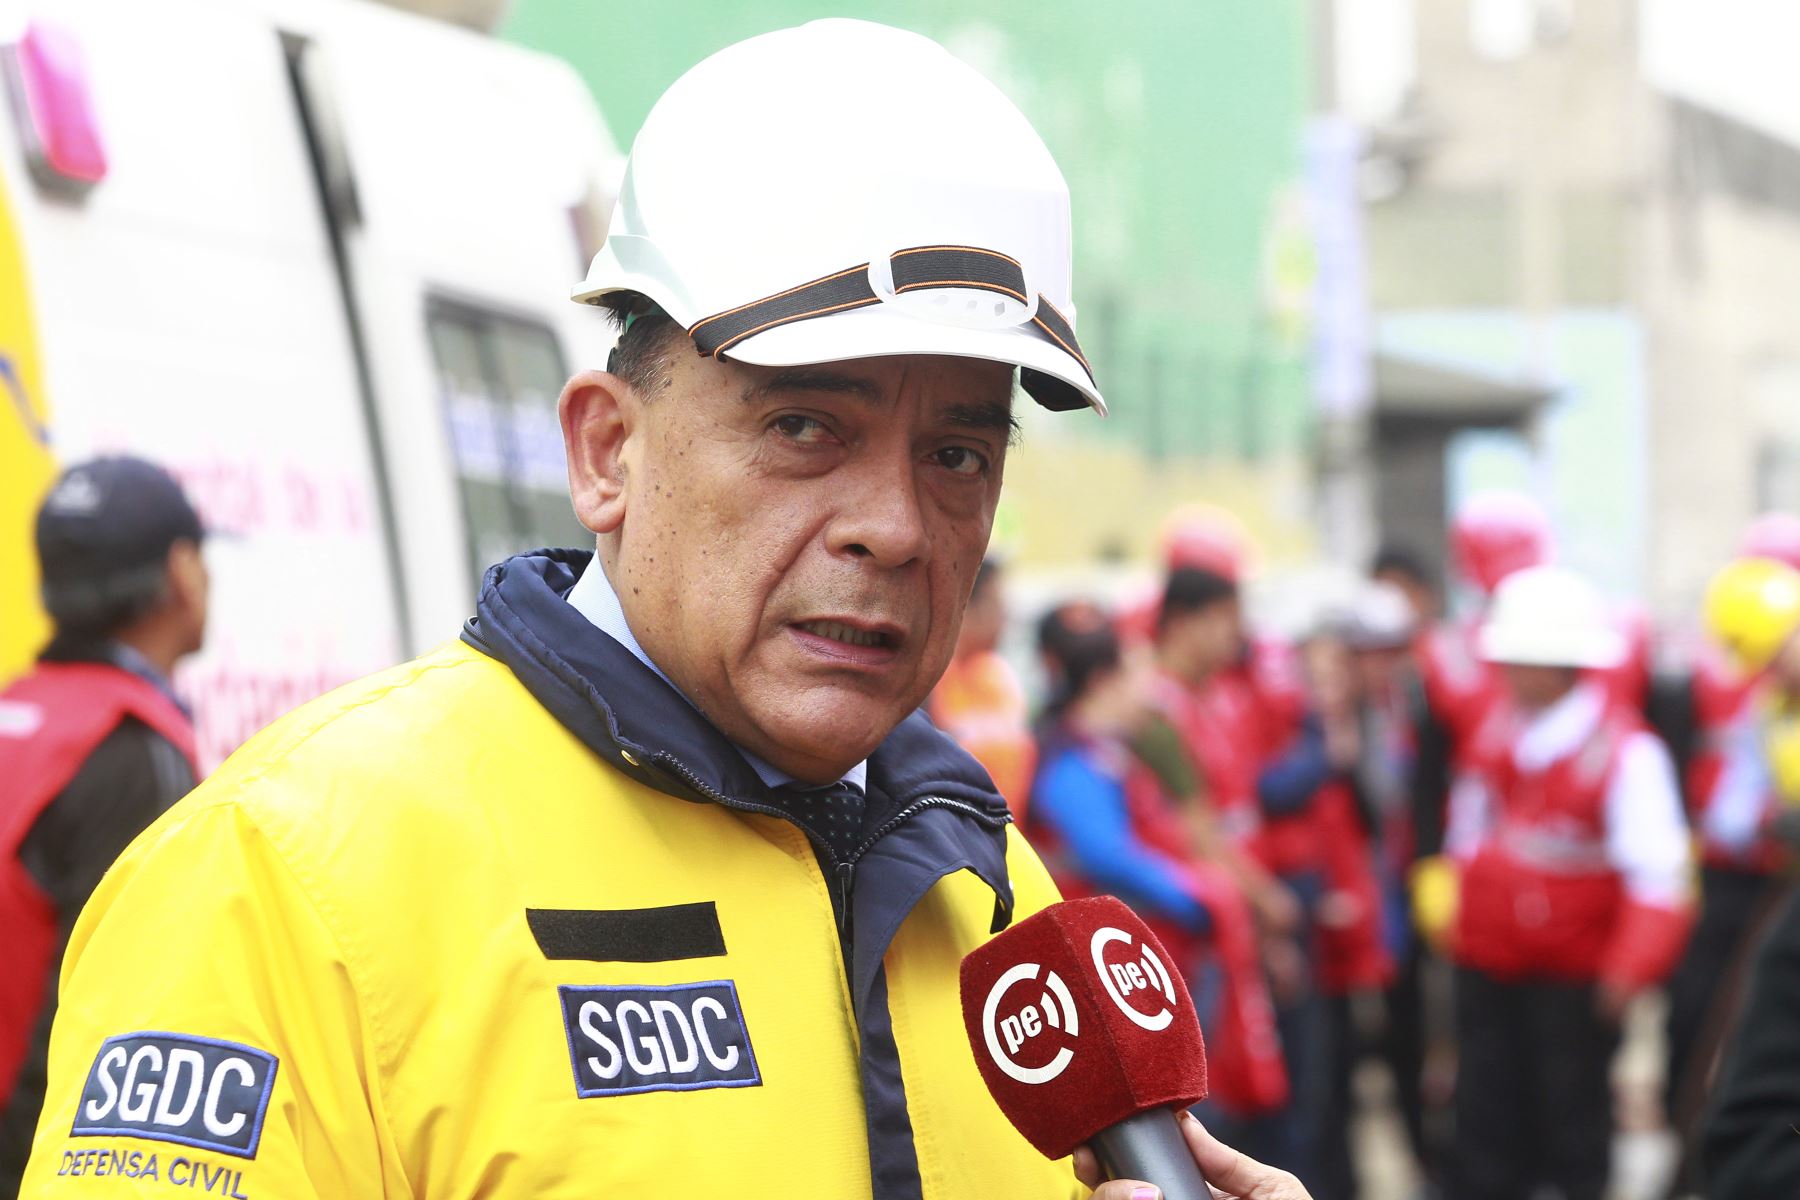 El jefe de bomberos ahora se encuentra en rehabilitación. Foto: ANDINA/Eddy Ramos.